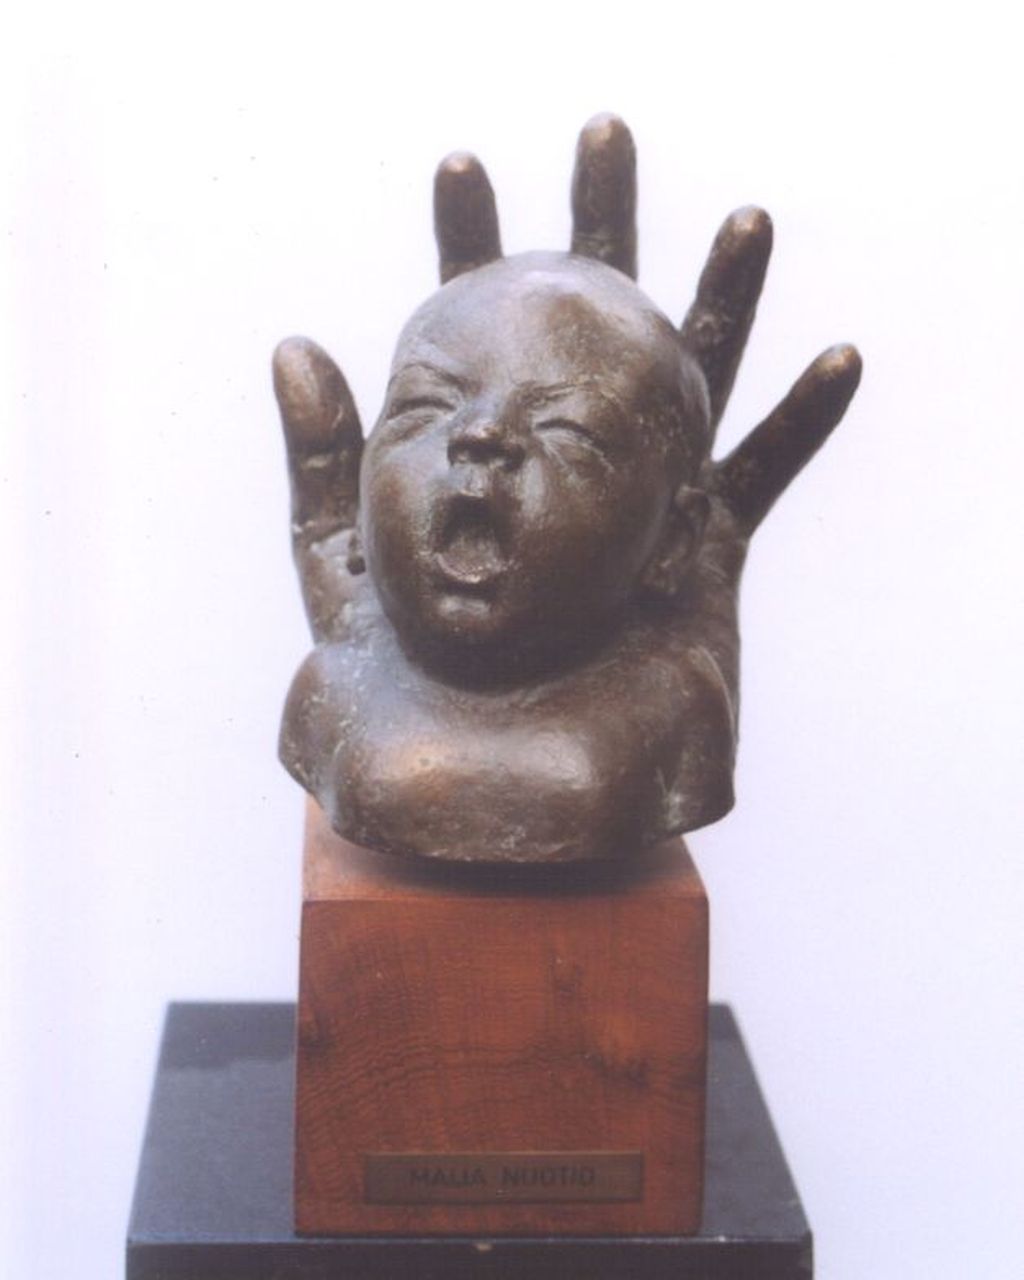 Maija Nuotio | Babyhoofdje gevat in een hand, brons, 21,5 x 18,5 cm, gesigneerd op zijkant hand en gedateerd '74